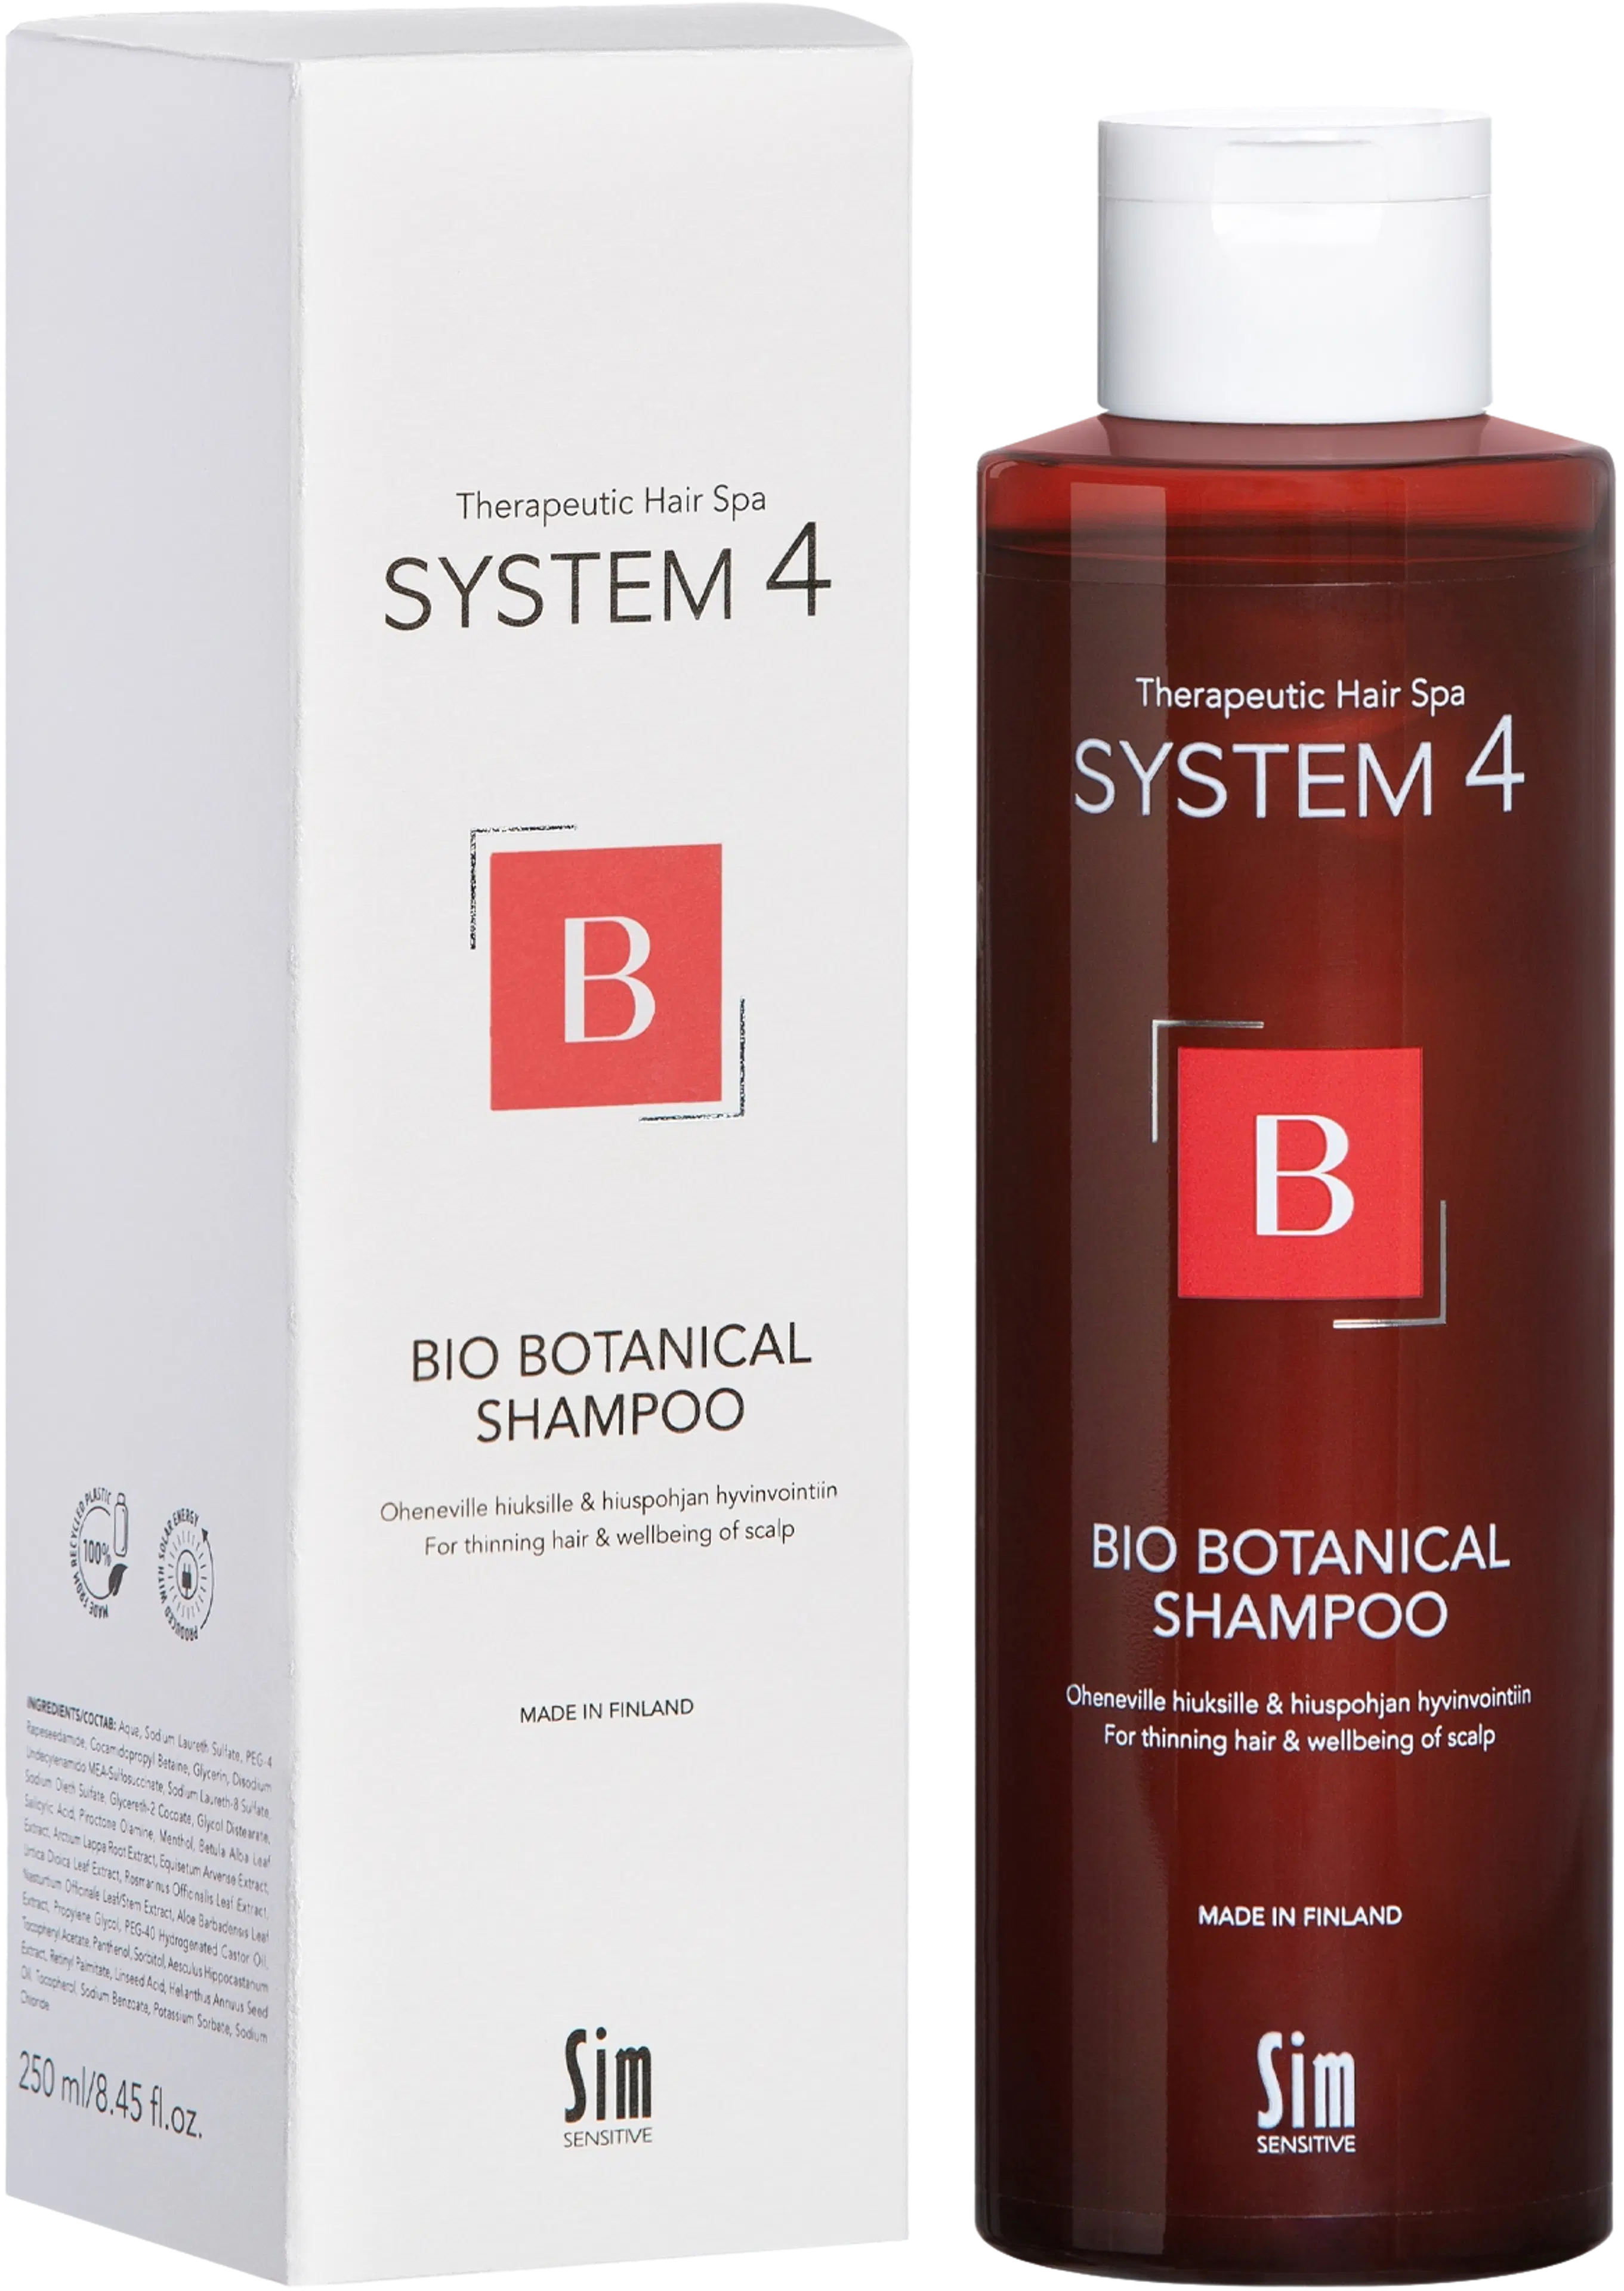 Sim Sensitive System4, B Bio Botanical Shampoo 250 ml